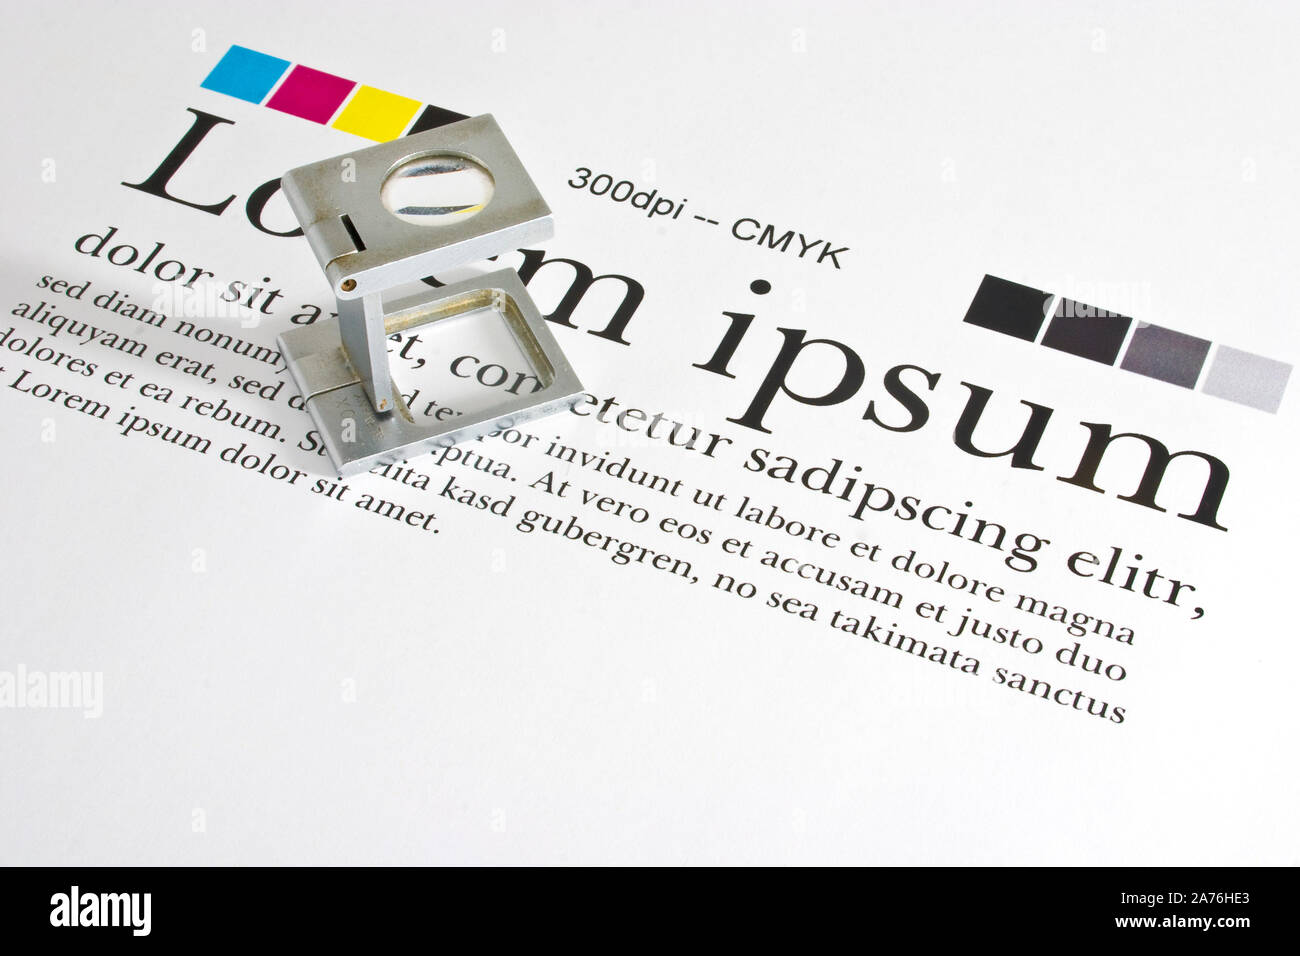 Lupe auf einem Test Druckbogen mit "Lorem Ipsum" blindtext Kontrolle Messung und Color Management Stockfoto